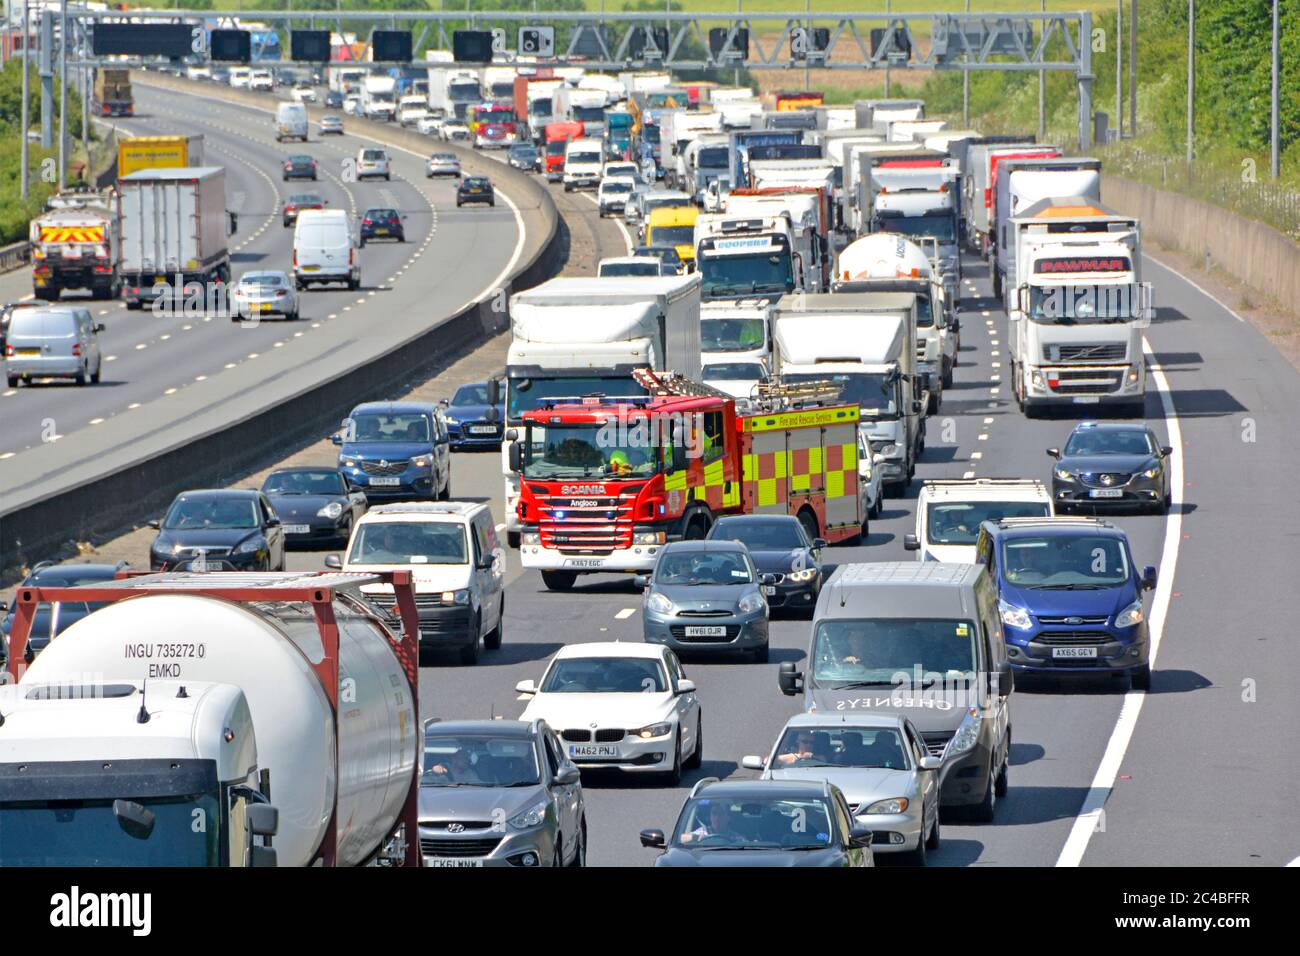 Les embouteillages et les pompiers sur l'autoroute appellent les services d'urgence pour se rendre sur la scène de l'accident car les voitures et les fourgonnettes tentent de s'éloigner sur la m25 UK. Voir note Banque D'Images